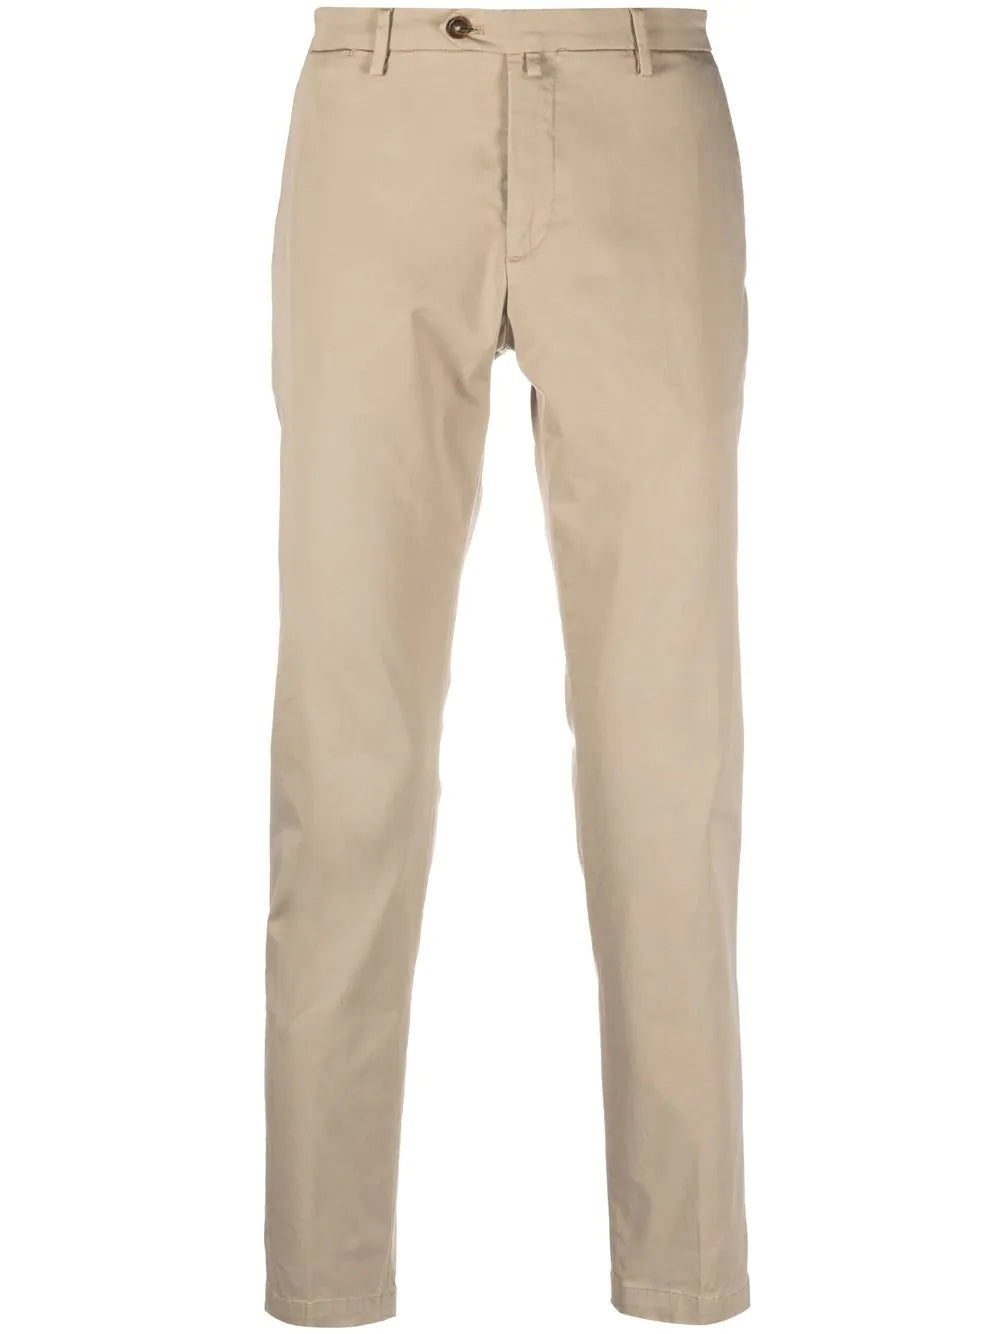 Pantalone Briglia Slim Fit / Beige - Ideal Moda